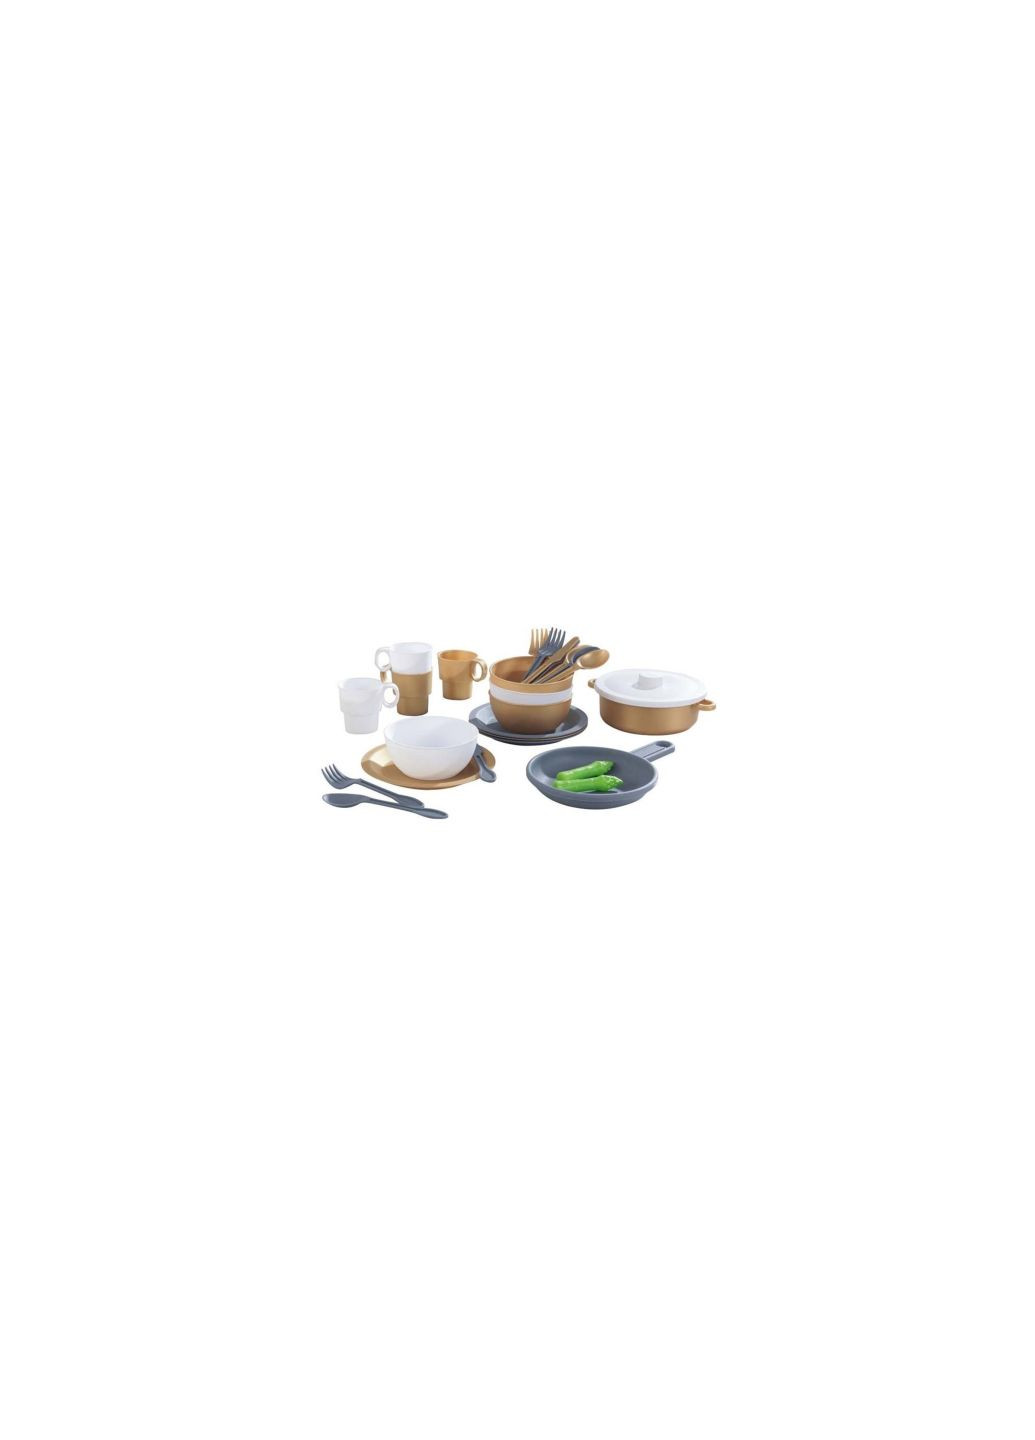 Игровой набор посуда Modern Metallics 27 предметов (63532) KidKraft посуда modern metallics 27 предметів (278030205)